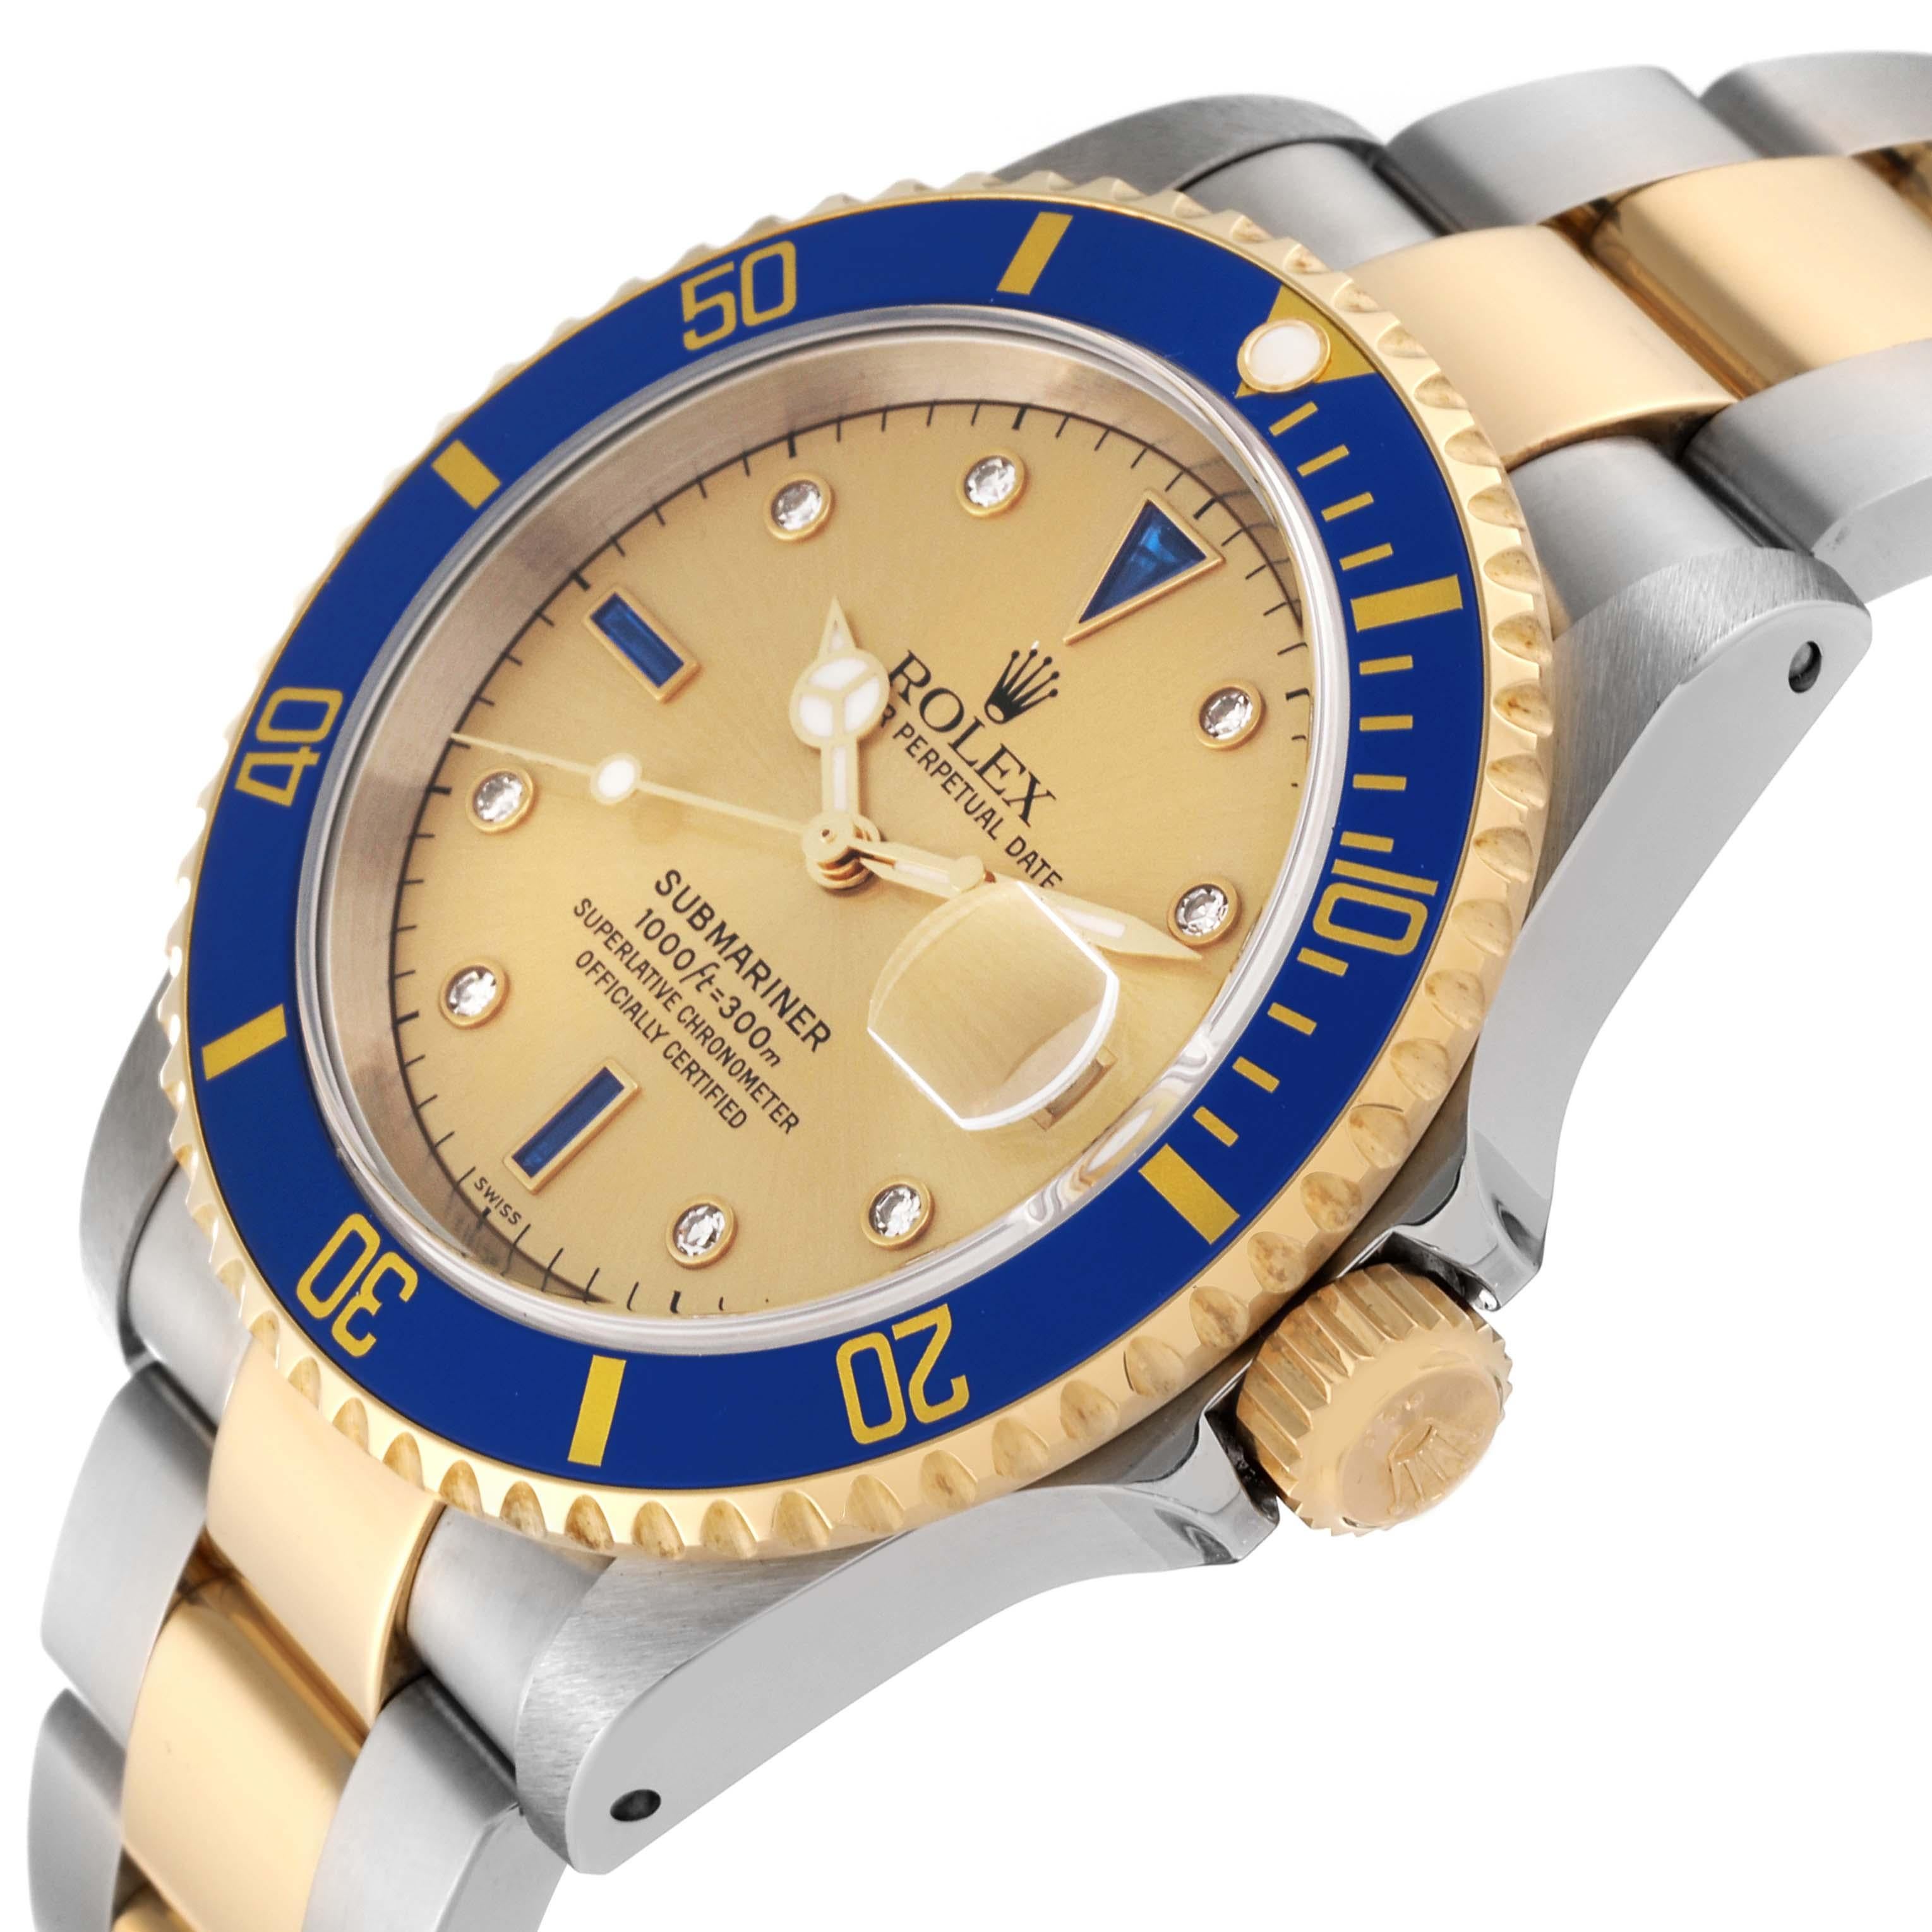 Rolex Submariner Steel Yellow Gold Diamond Serti Dial Watch 16613 Unworn NOS For Sale 2